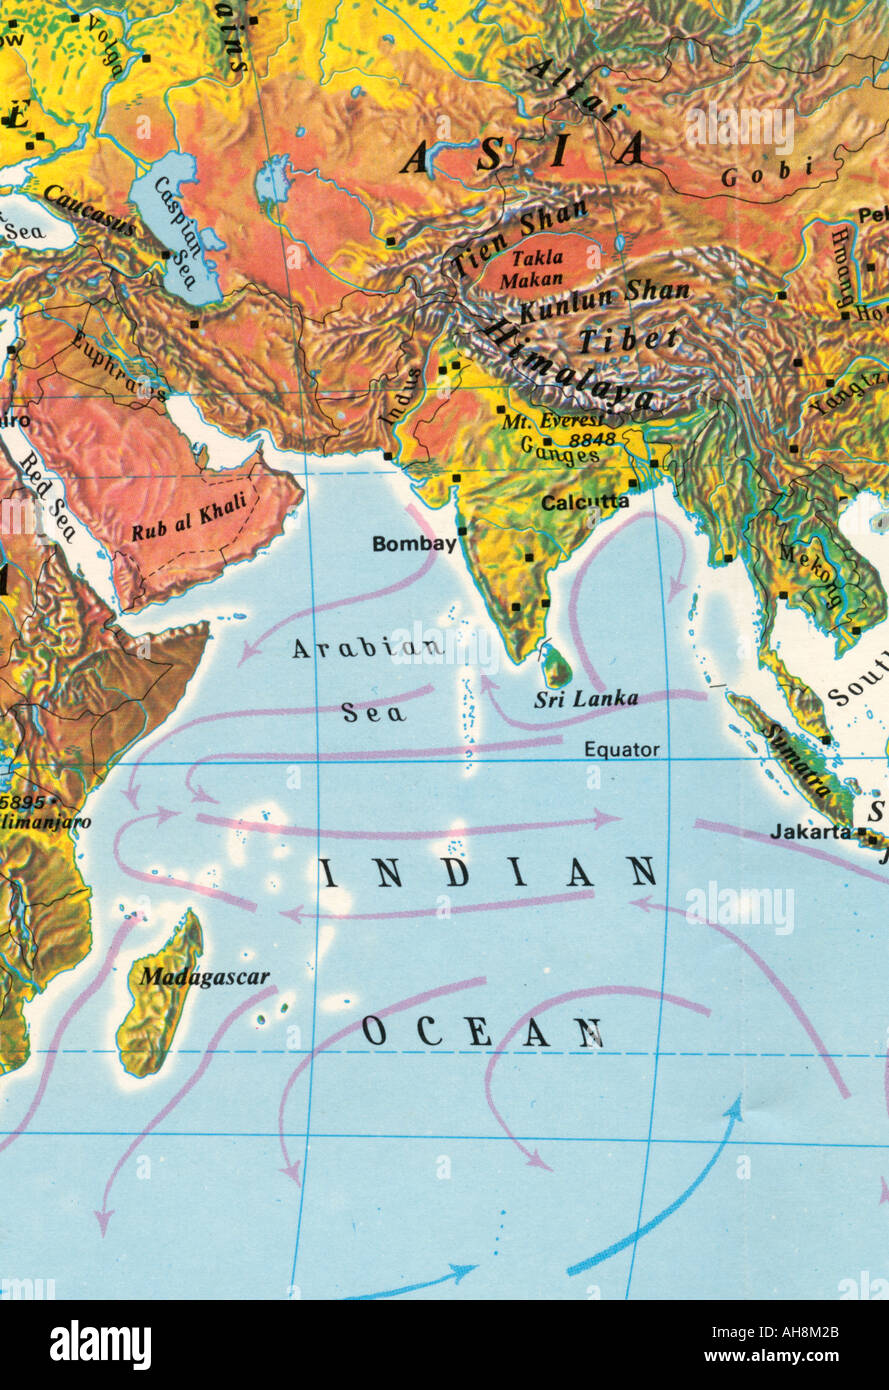 Karte von Indien Asien und Indischer Ozean Arabische Meer Sri Lanka